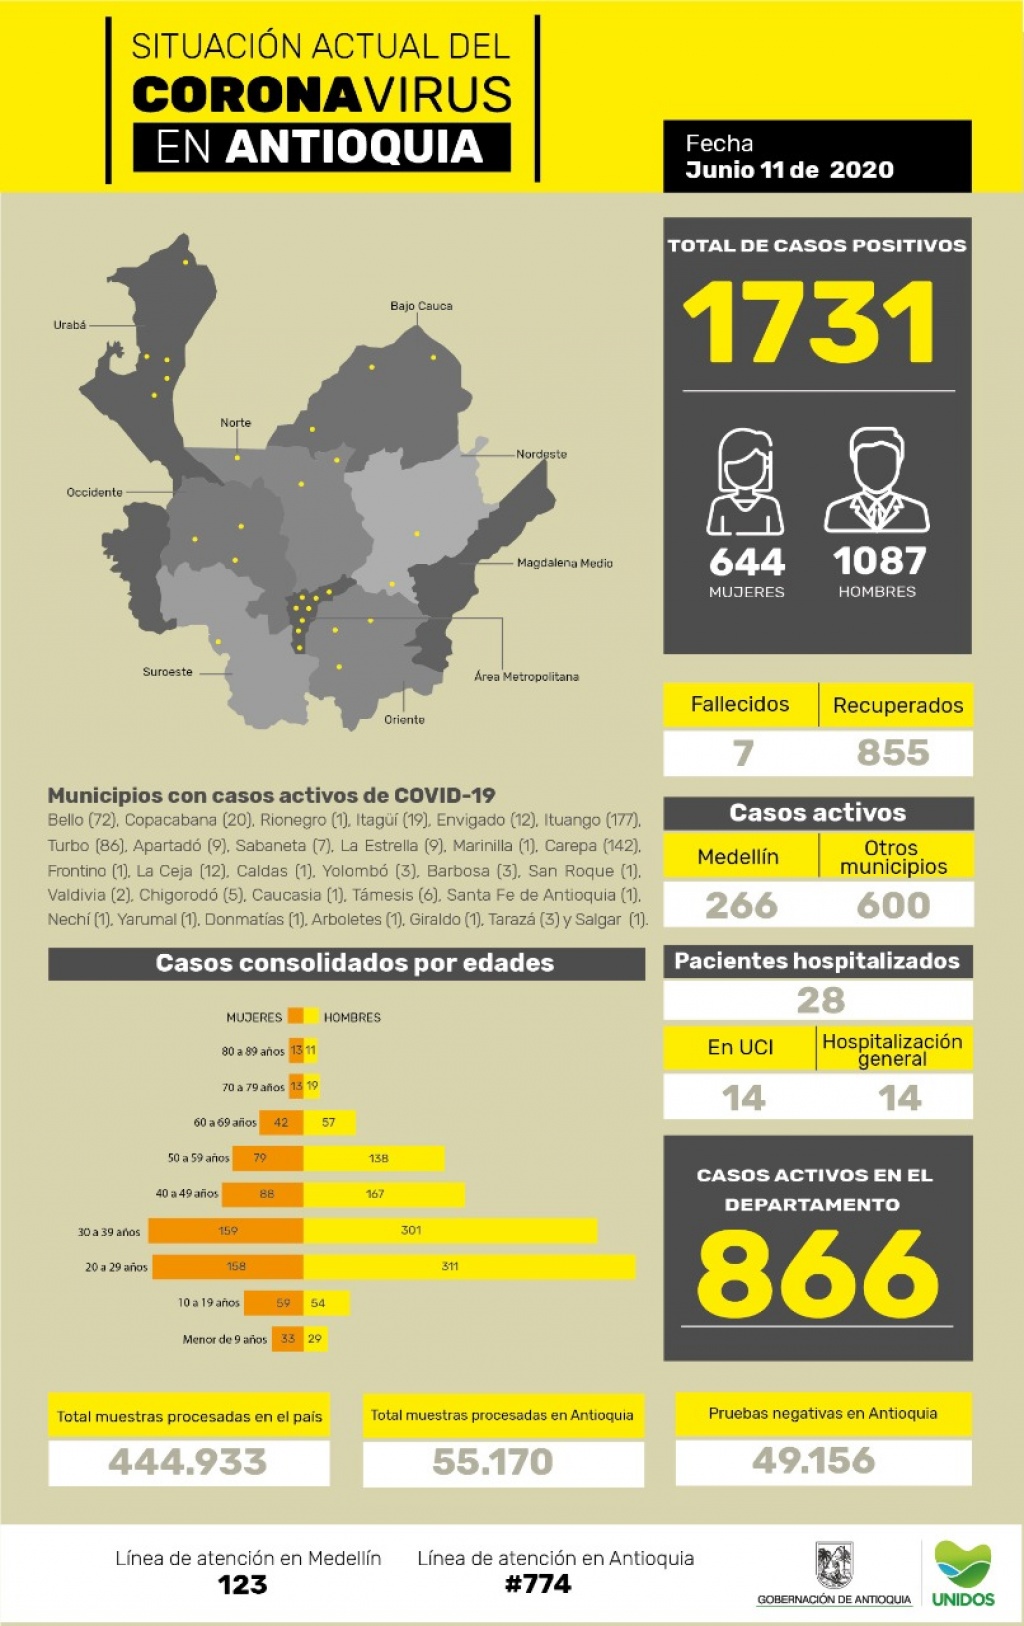 Situación actual del coronavirus en Antioquia